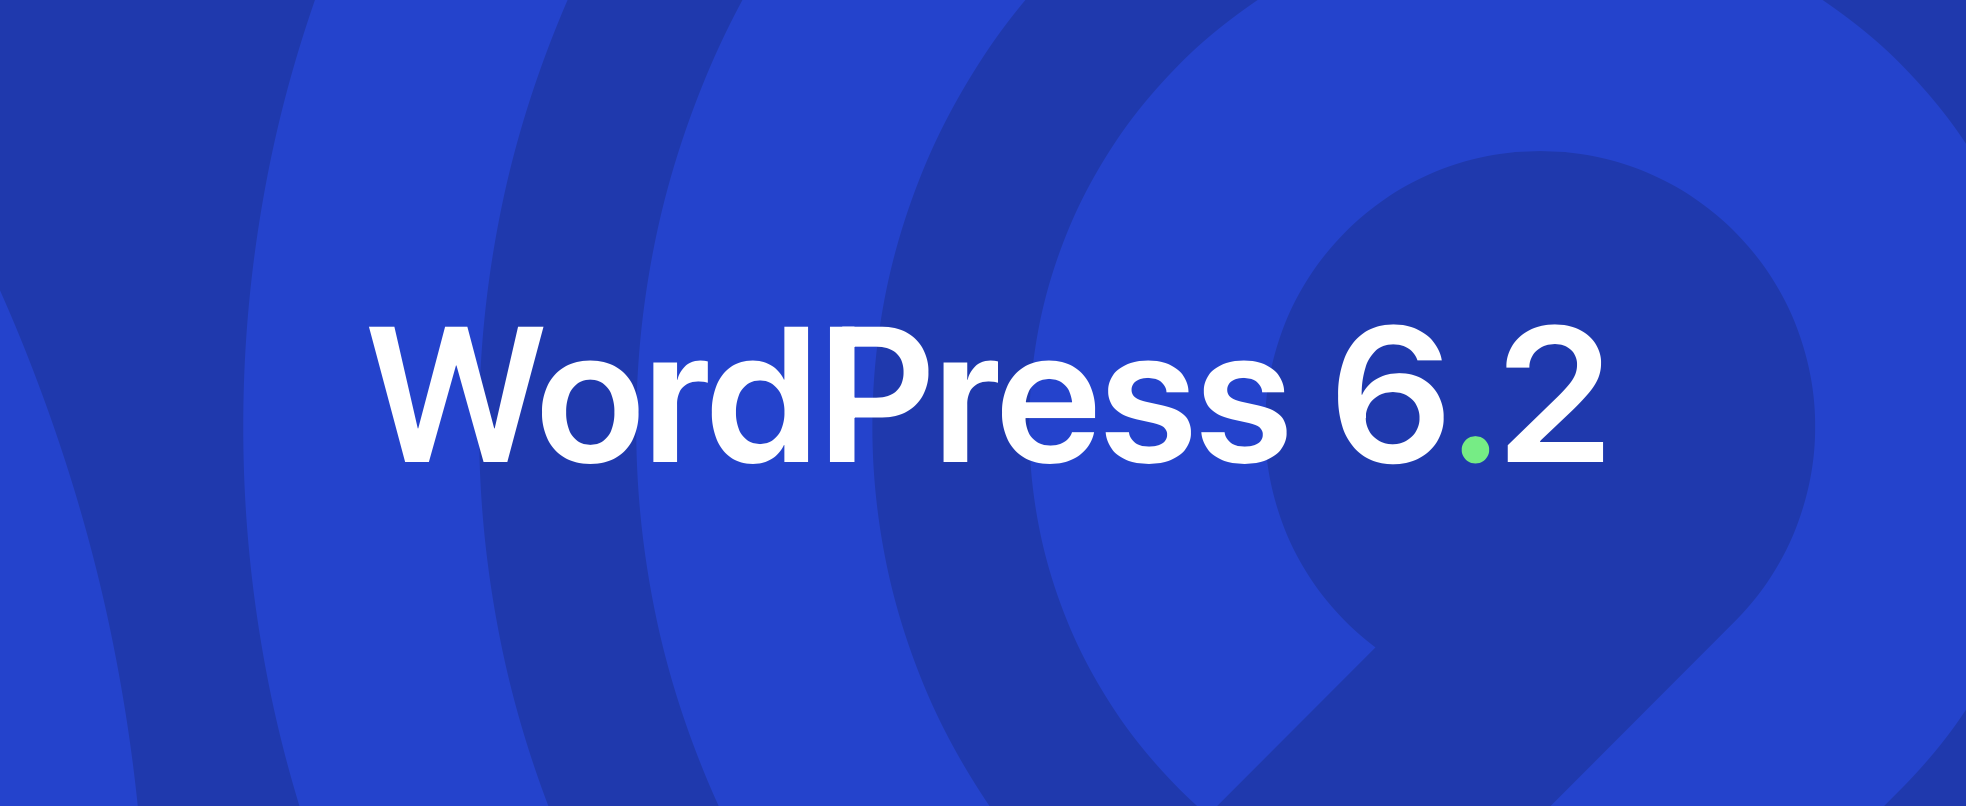 WordPress 6.2 ist verfügbar – Vorteile und Besonderheiten der neuen Version